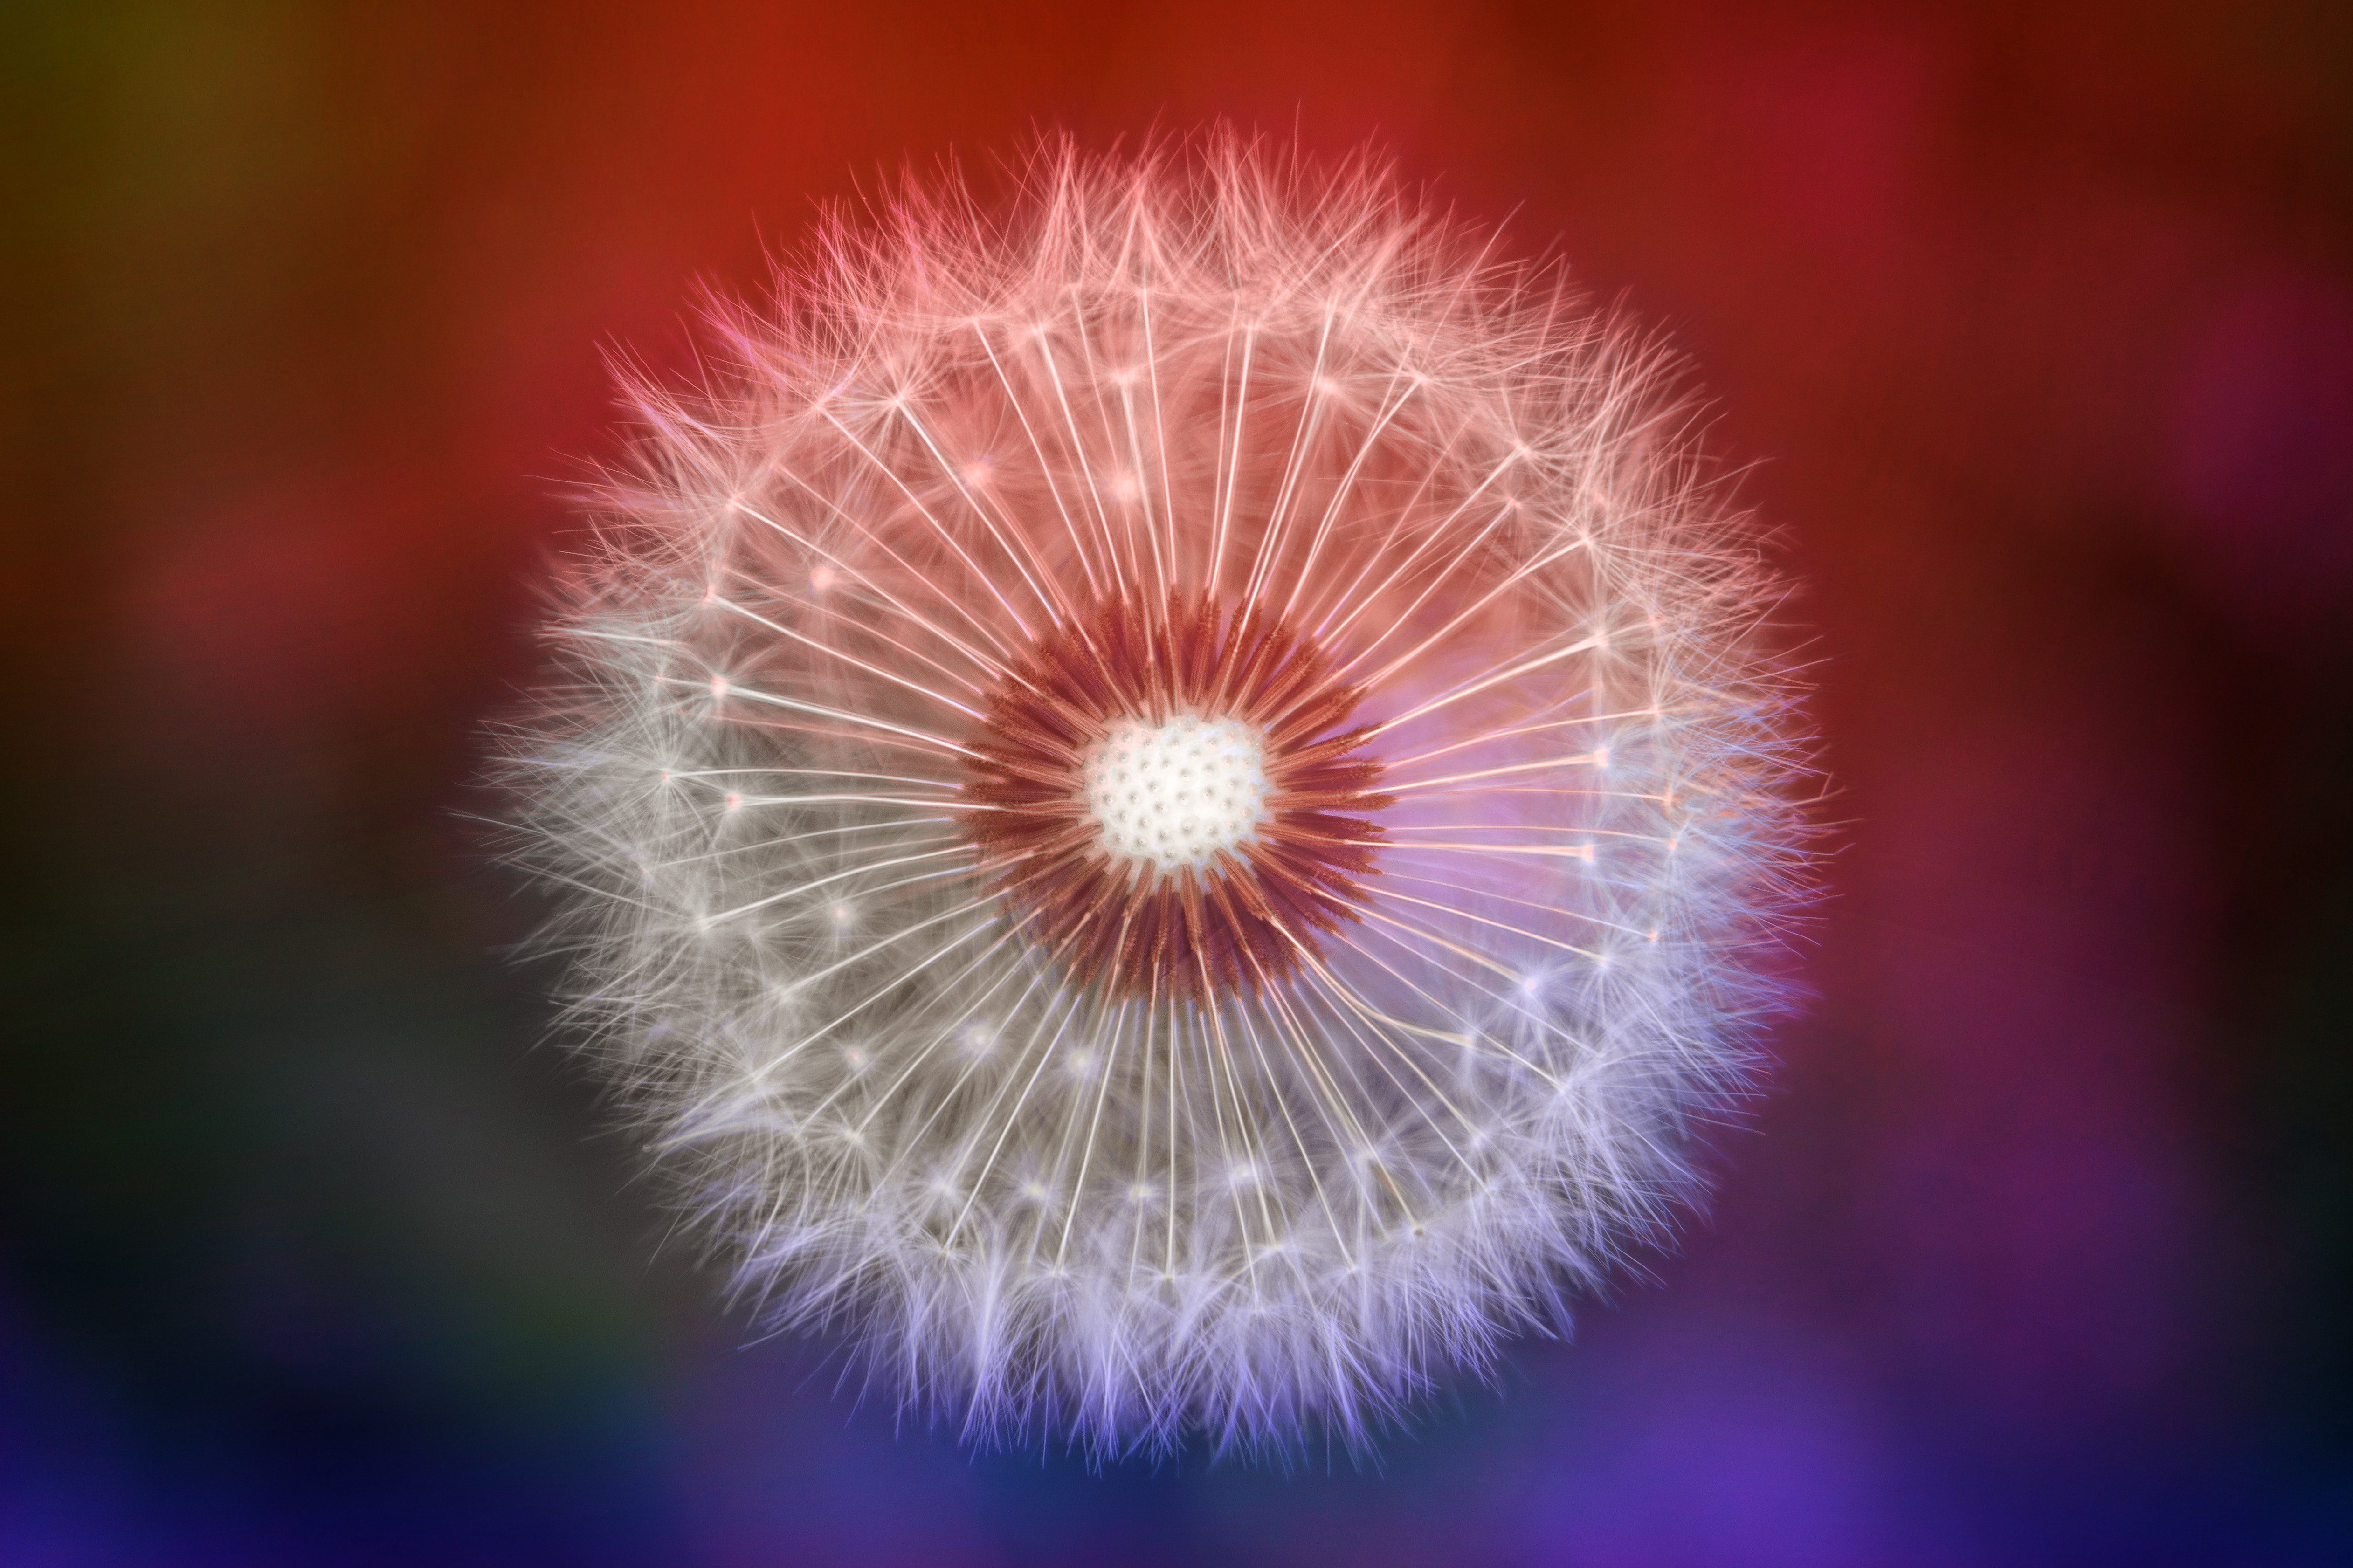 Free download wallpaper Flower, Earth, Dandelion on your PC desktop